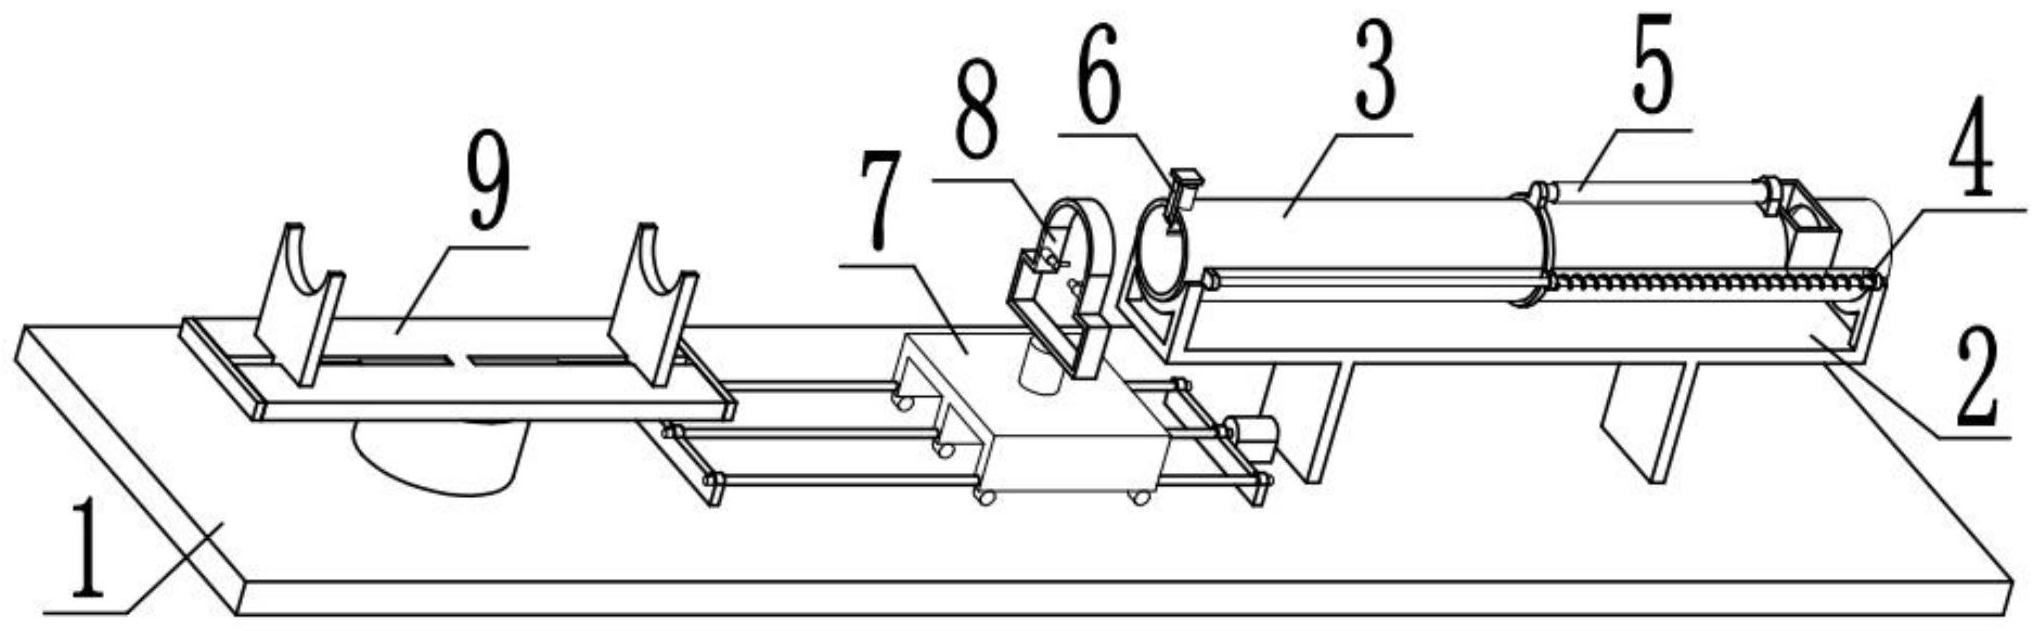 电机转子卡簧装配机-专利